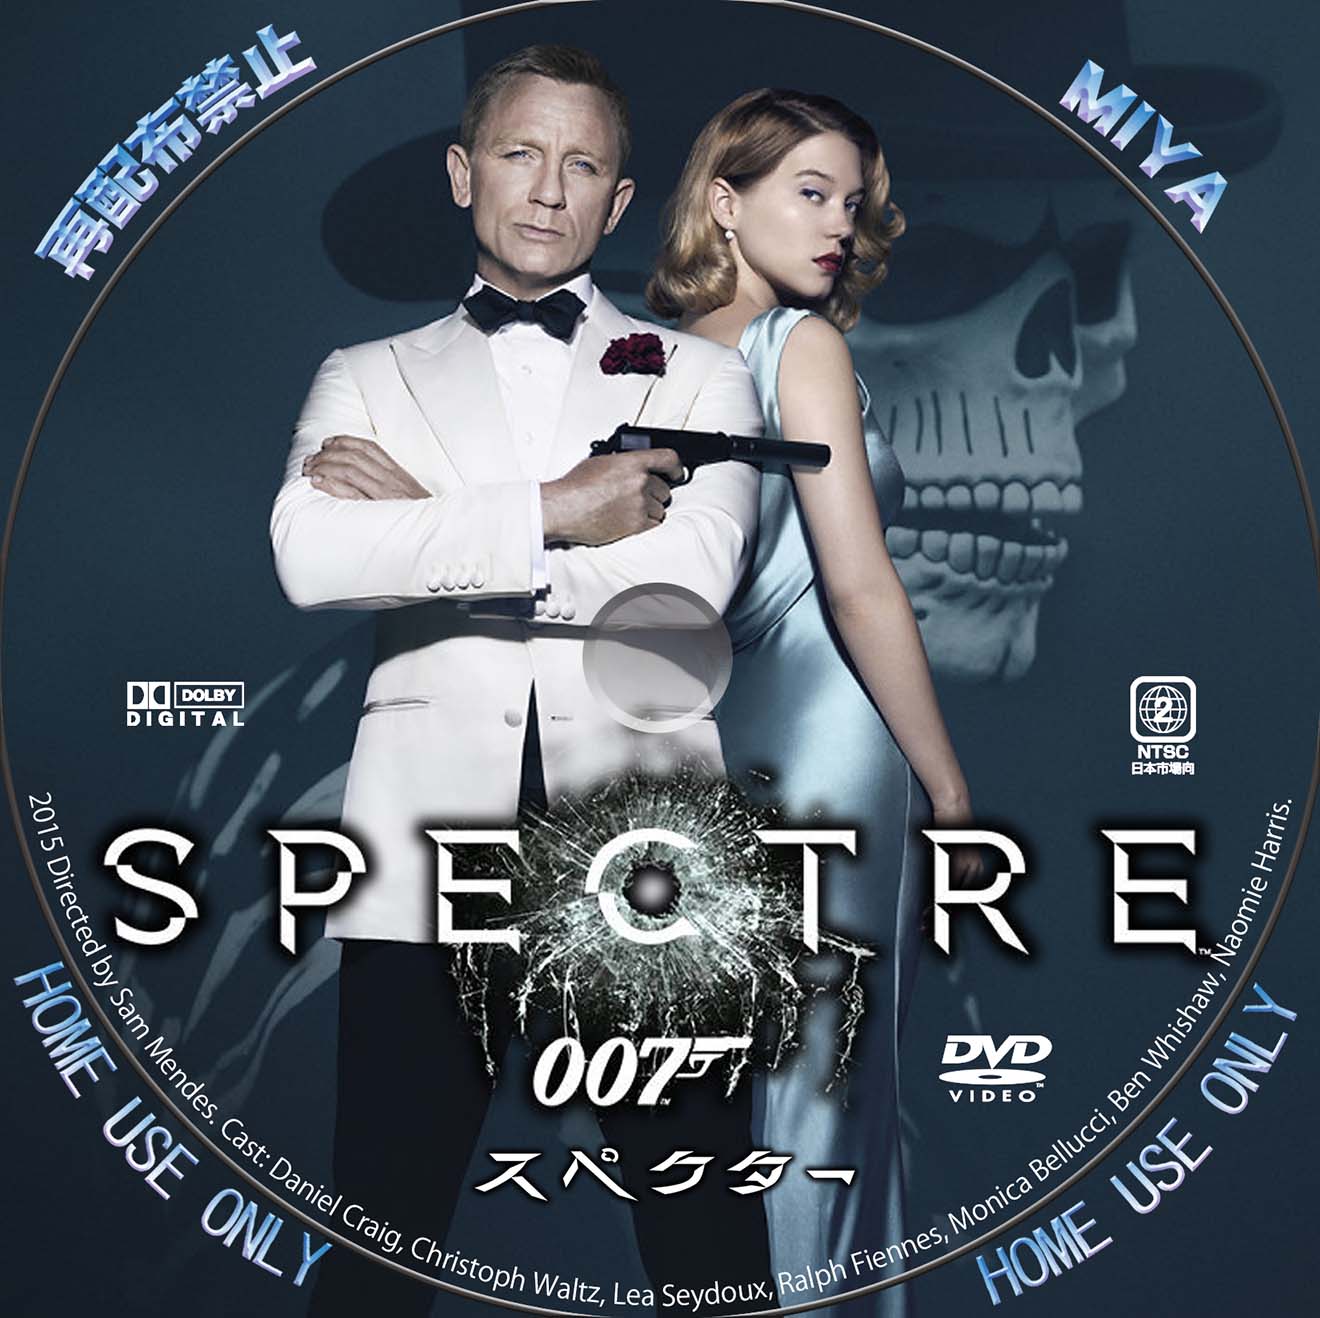 007 スペクター Dvd レーベル